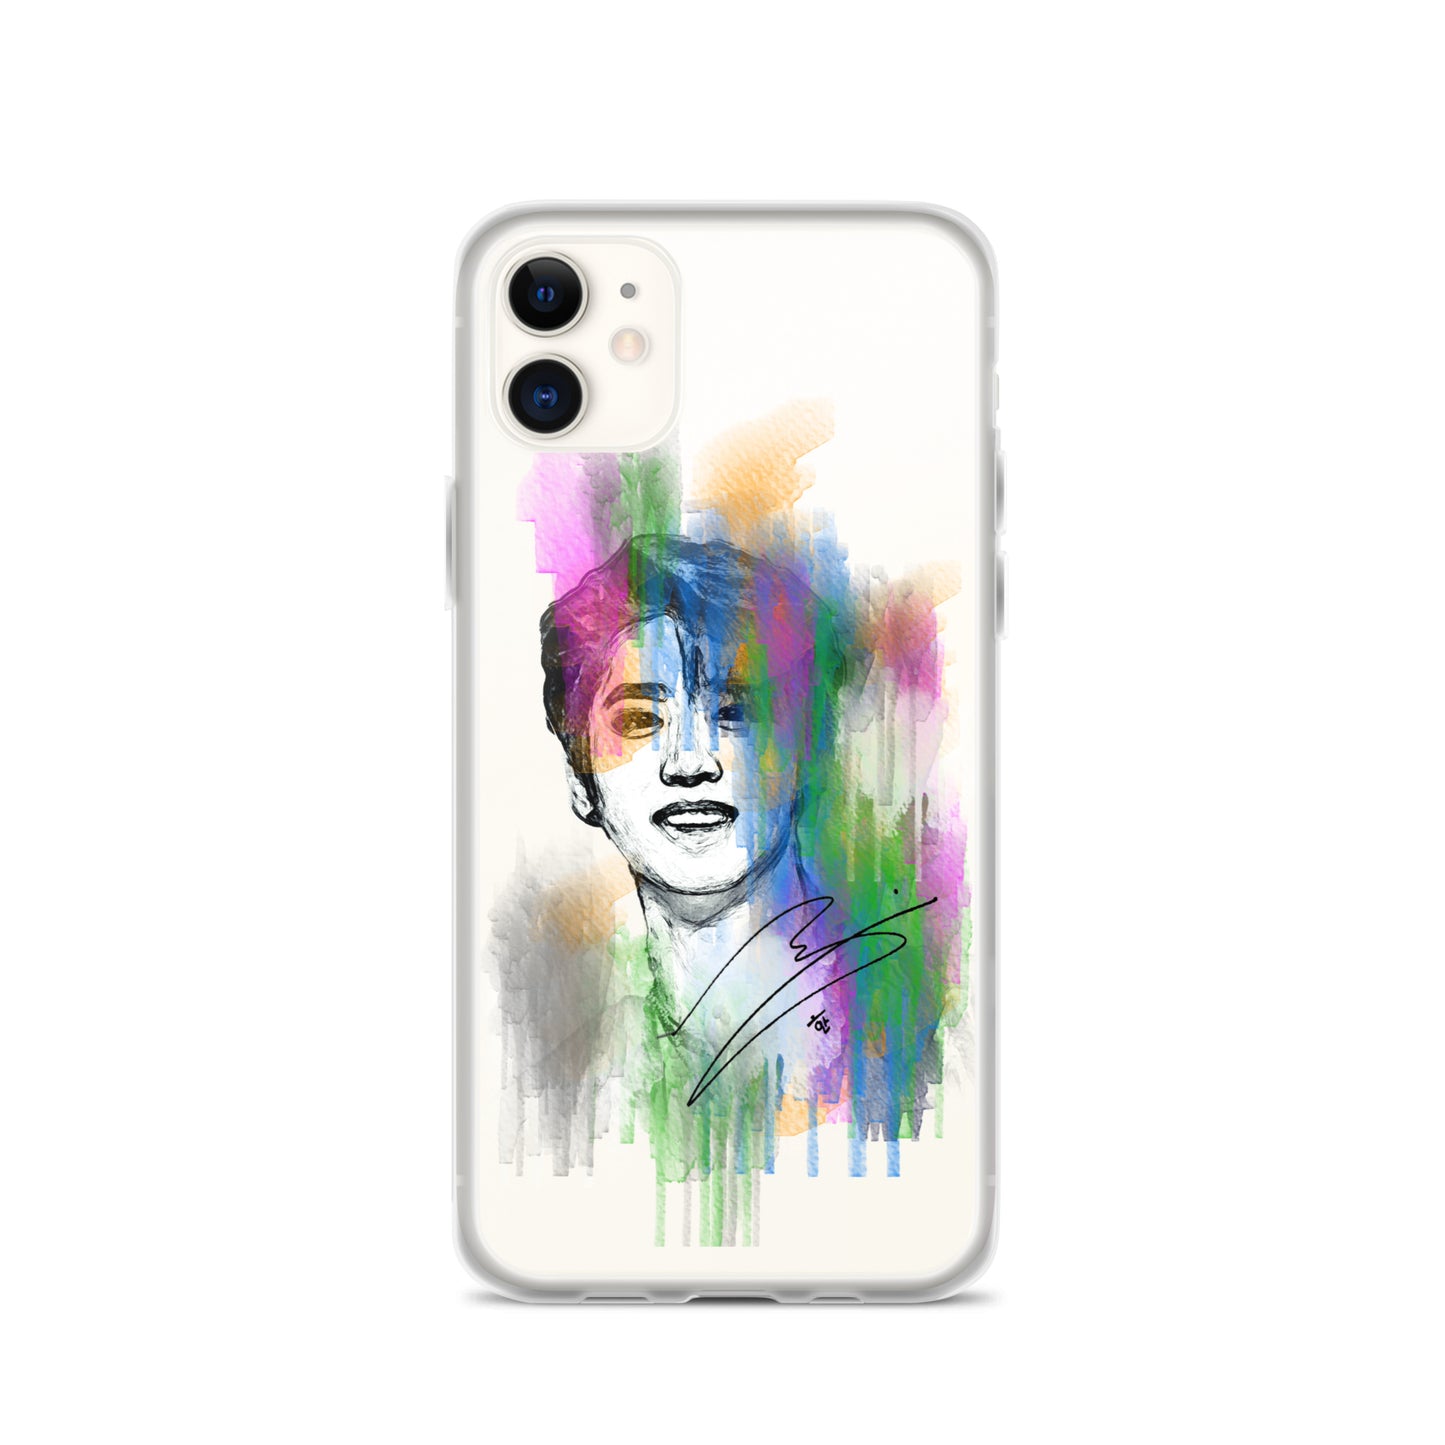 Stray Kids Han, Han Ji-sung Waterpaint Portrait iPhone Case